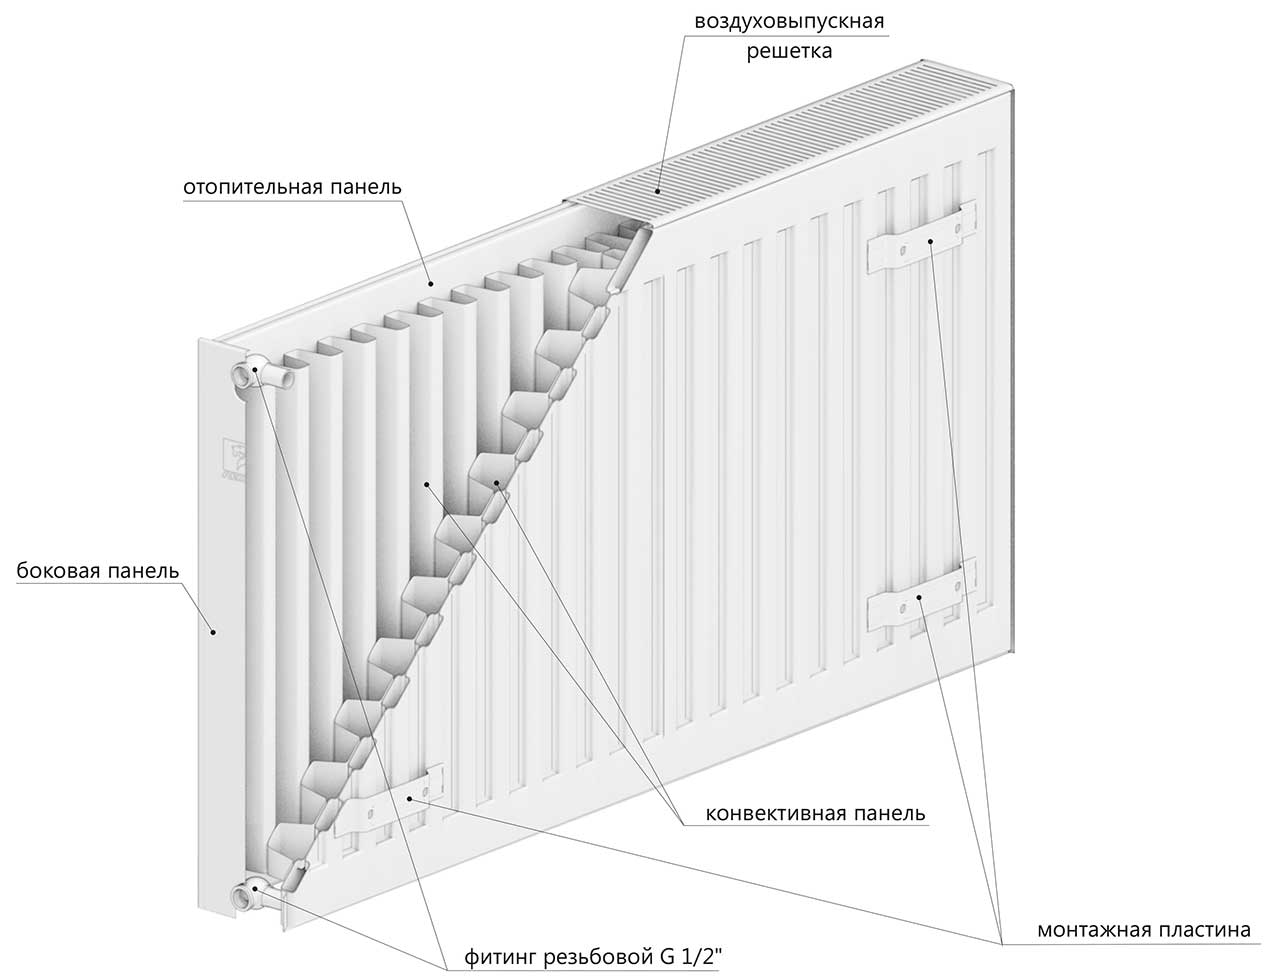 Стальной панельный радиатор DD PREMIUM TIP 22 500x1300 (VaillantGroup)